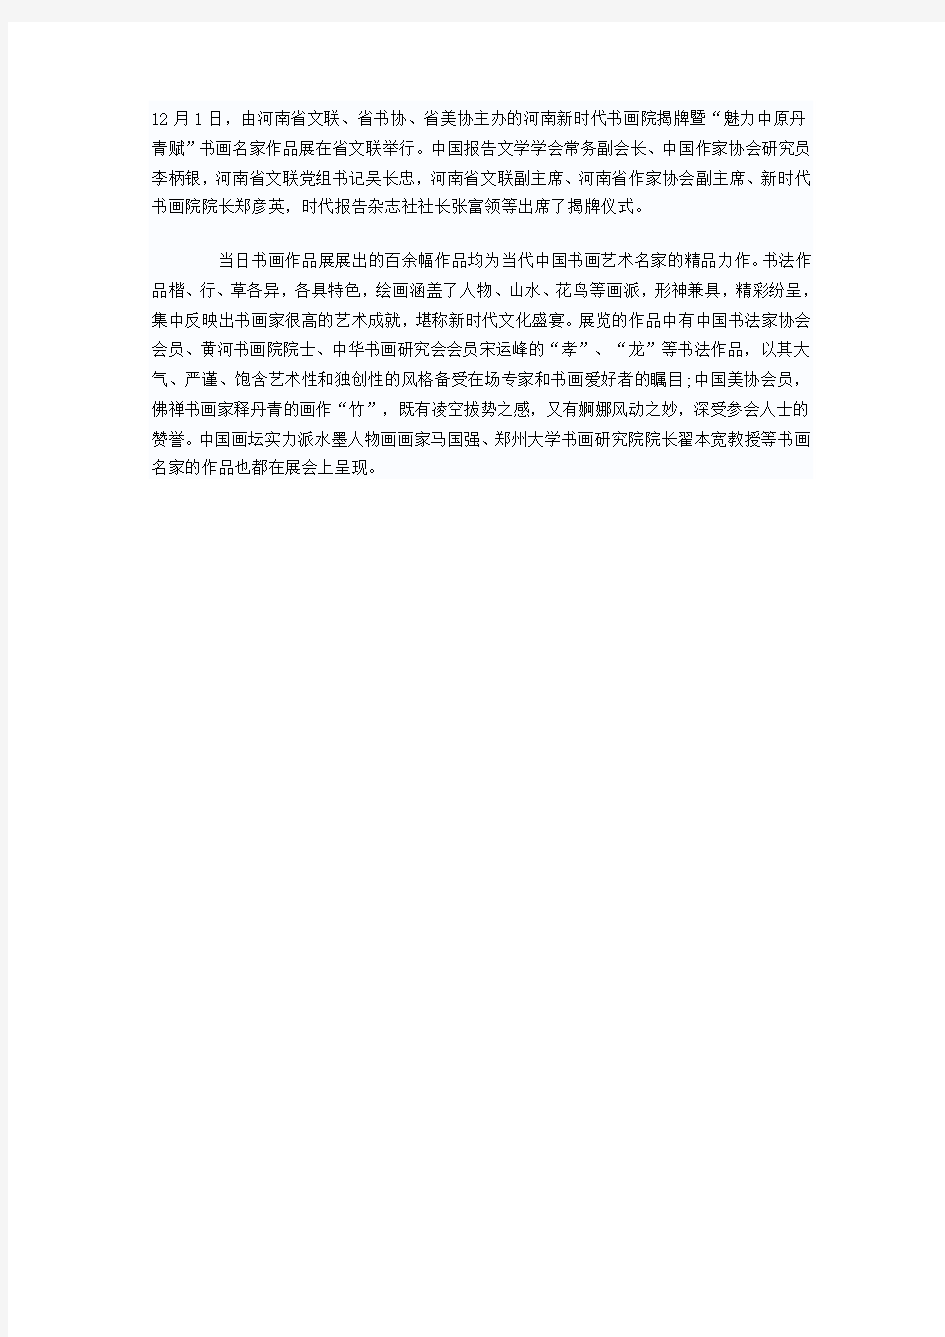 河南新时代书画院揭牌暨“魅力中原”名家书画展开幕